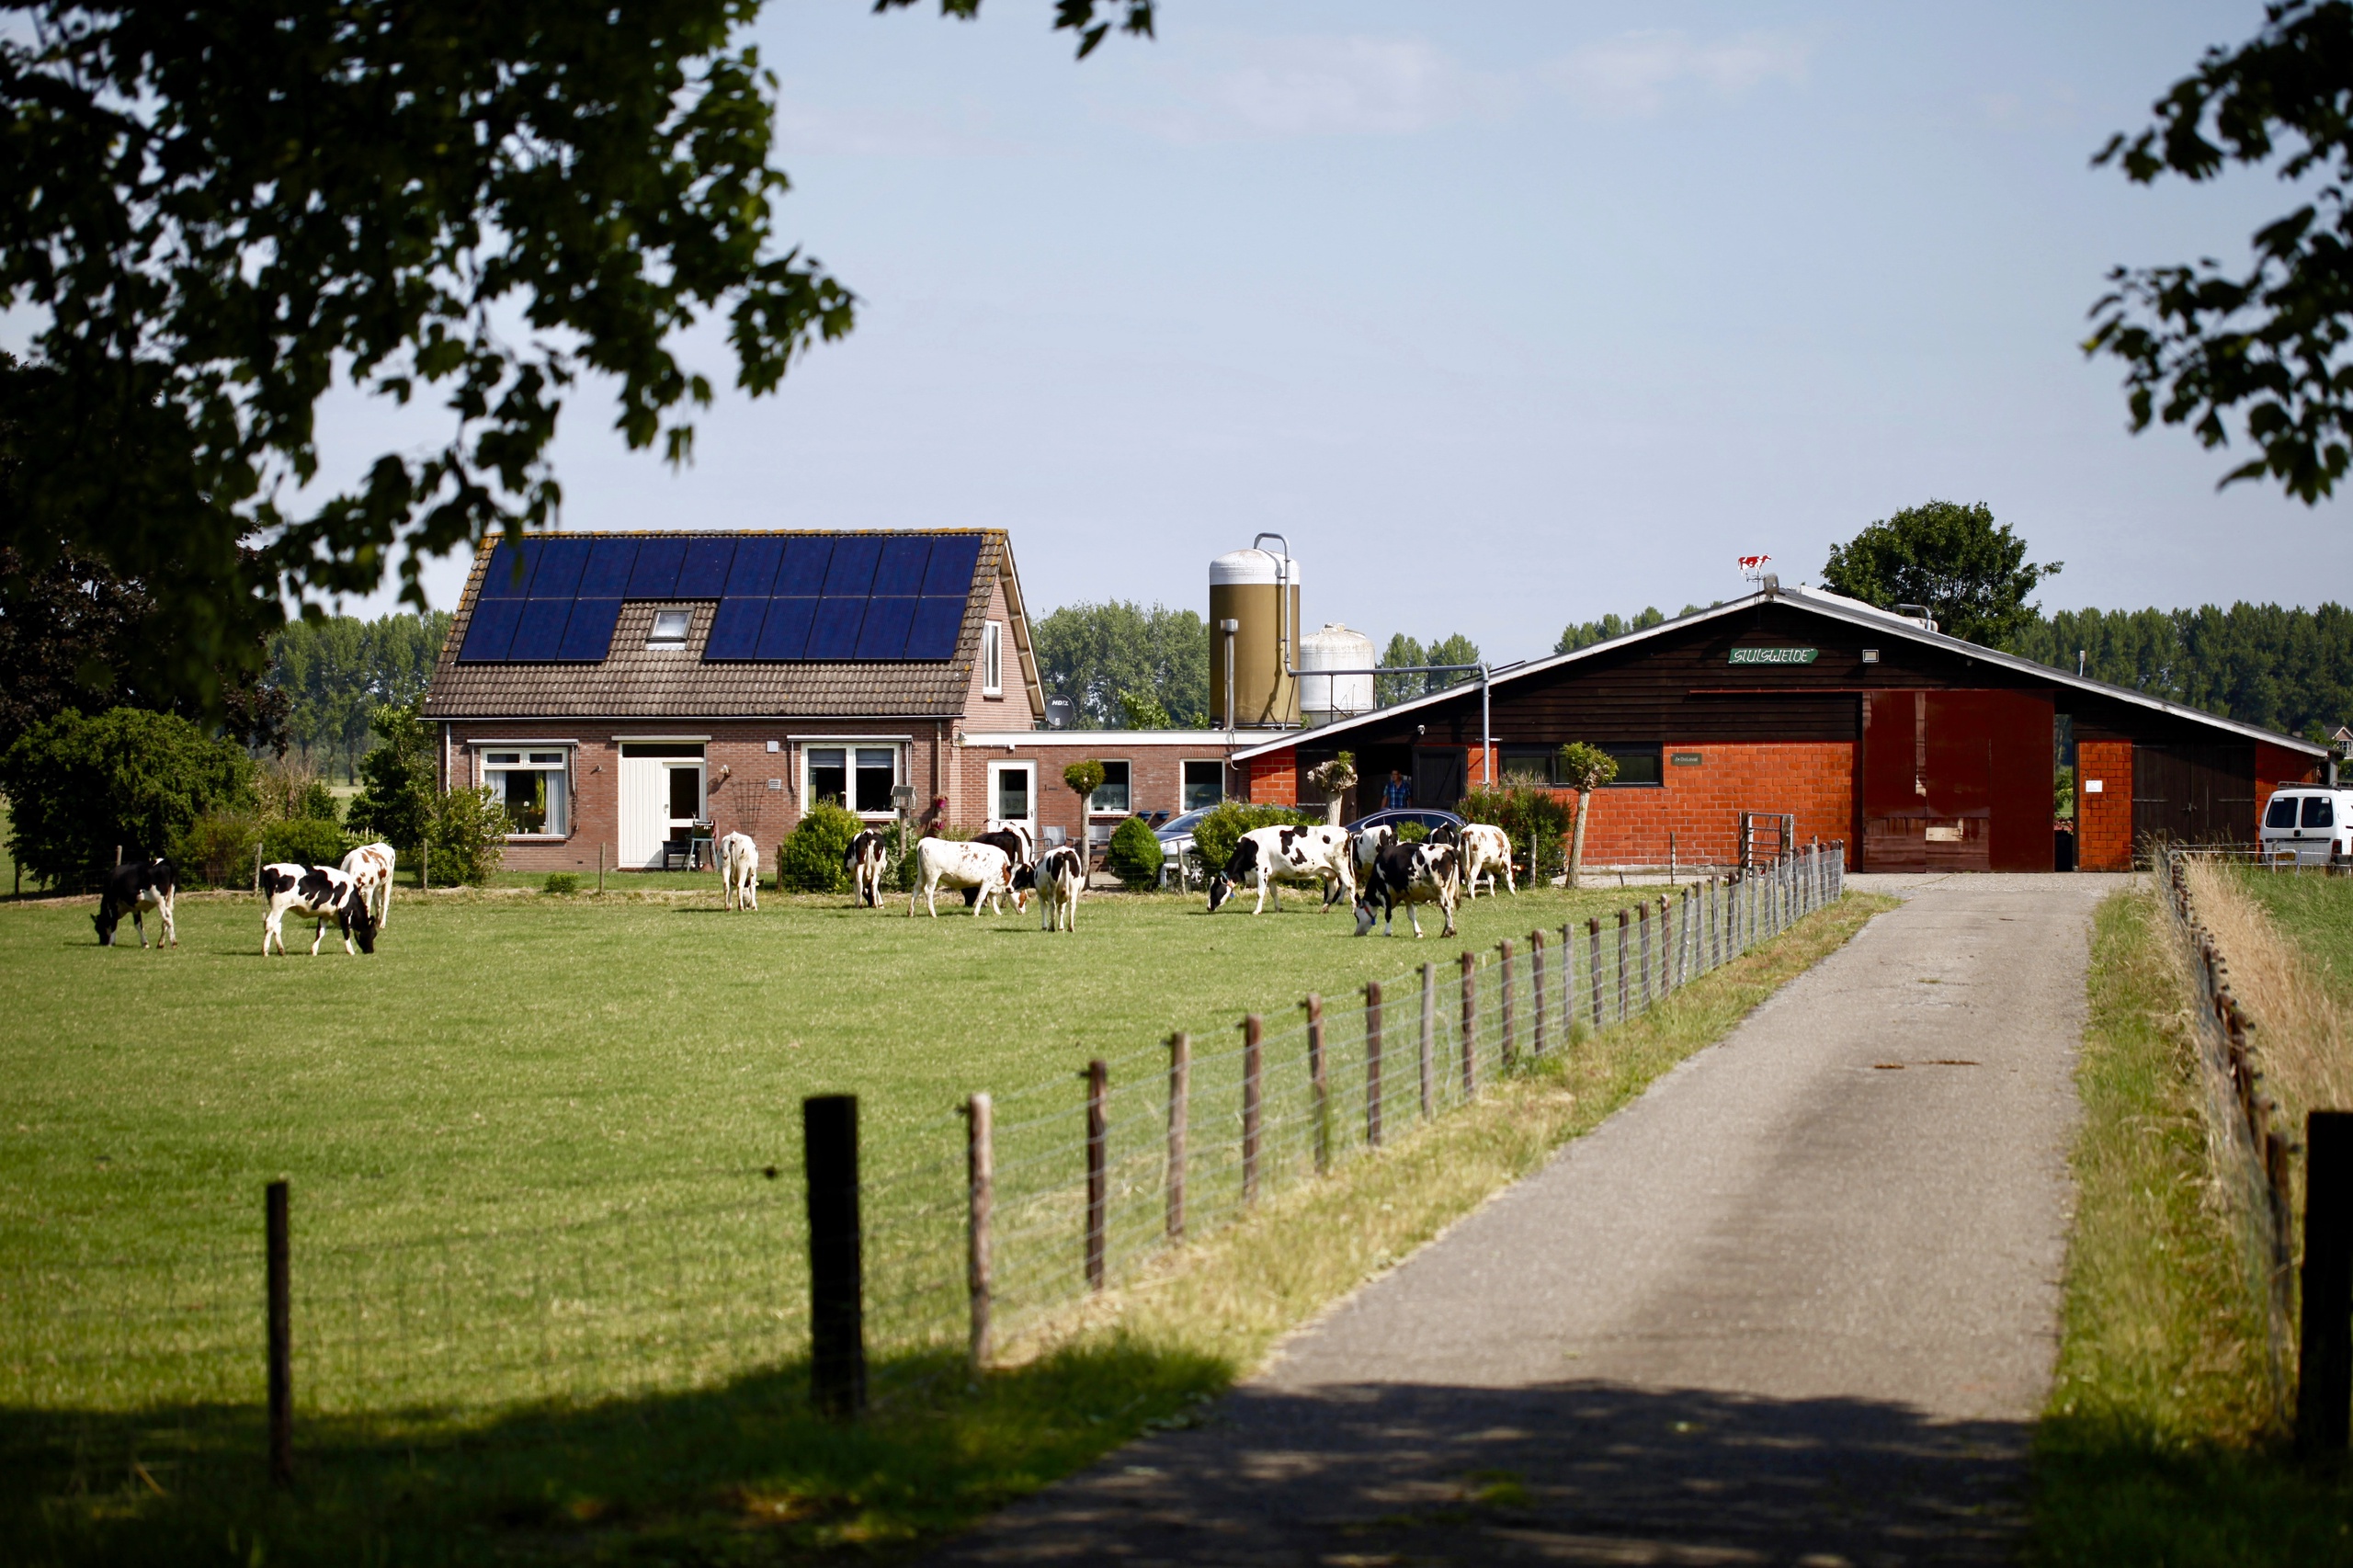 Provincies moeten de vergunningen intrekken van veertig veehouderijen waarvan duidelijk is dat ze veel stikstof uitstoten die in natuurgebieden terechtkomt. Dat heeft milieuorganisatie MOB geschreven in een brief aan de provincies Gelderland, Noord-Brabant, Overijssel en Limburg.